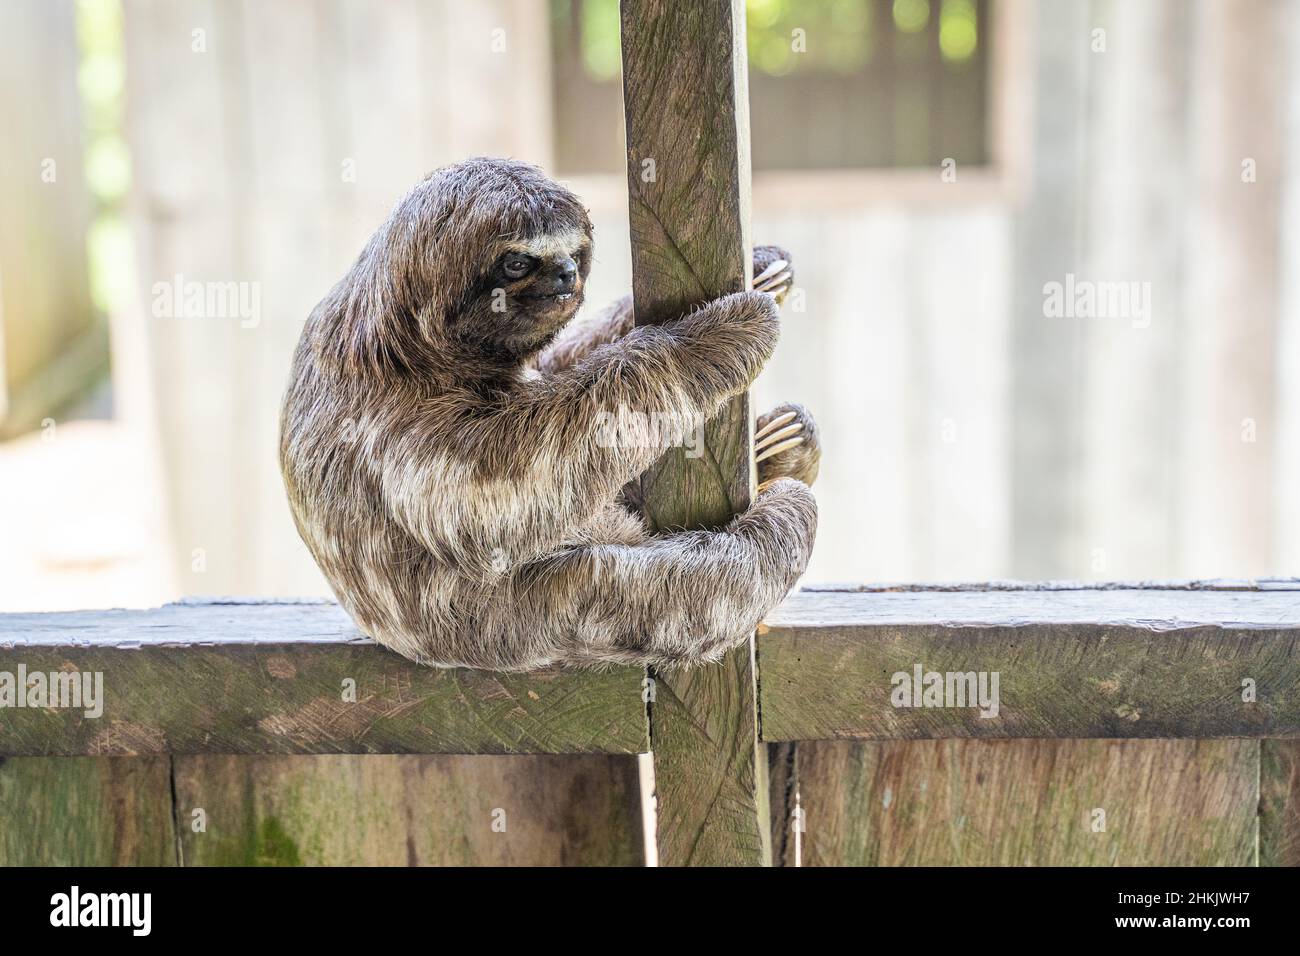 Baby sloth in the Amazon. At the Community November 3, The Village (La Aldea), Amazon, Peru Stock Photo